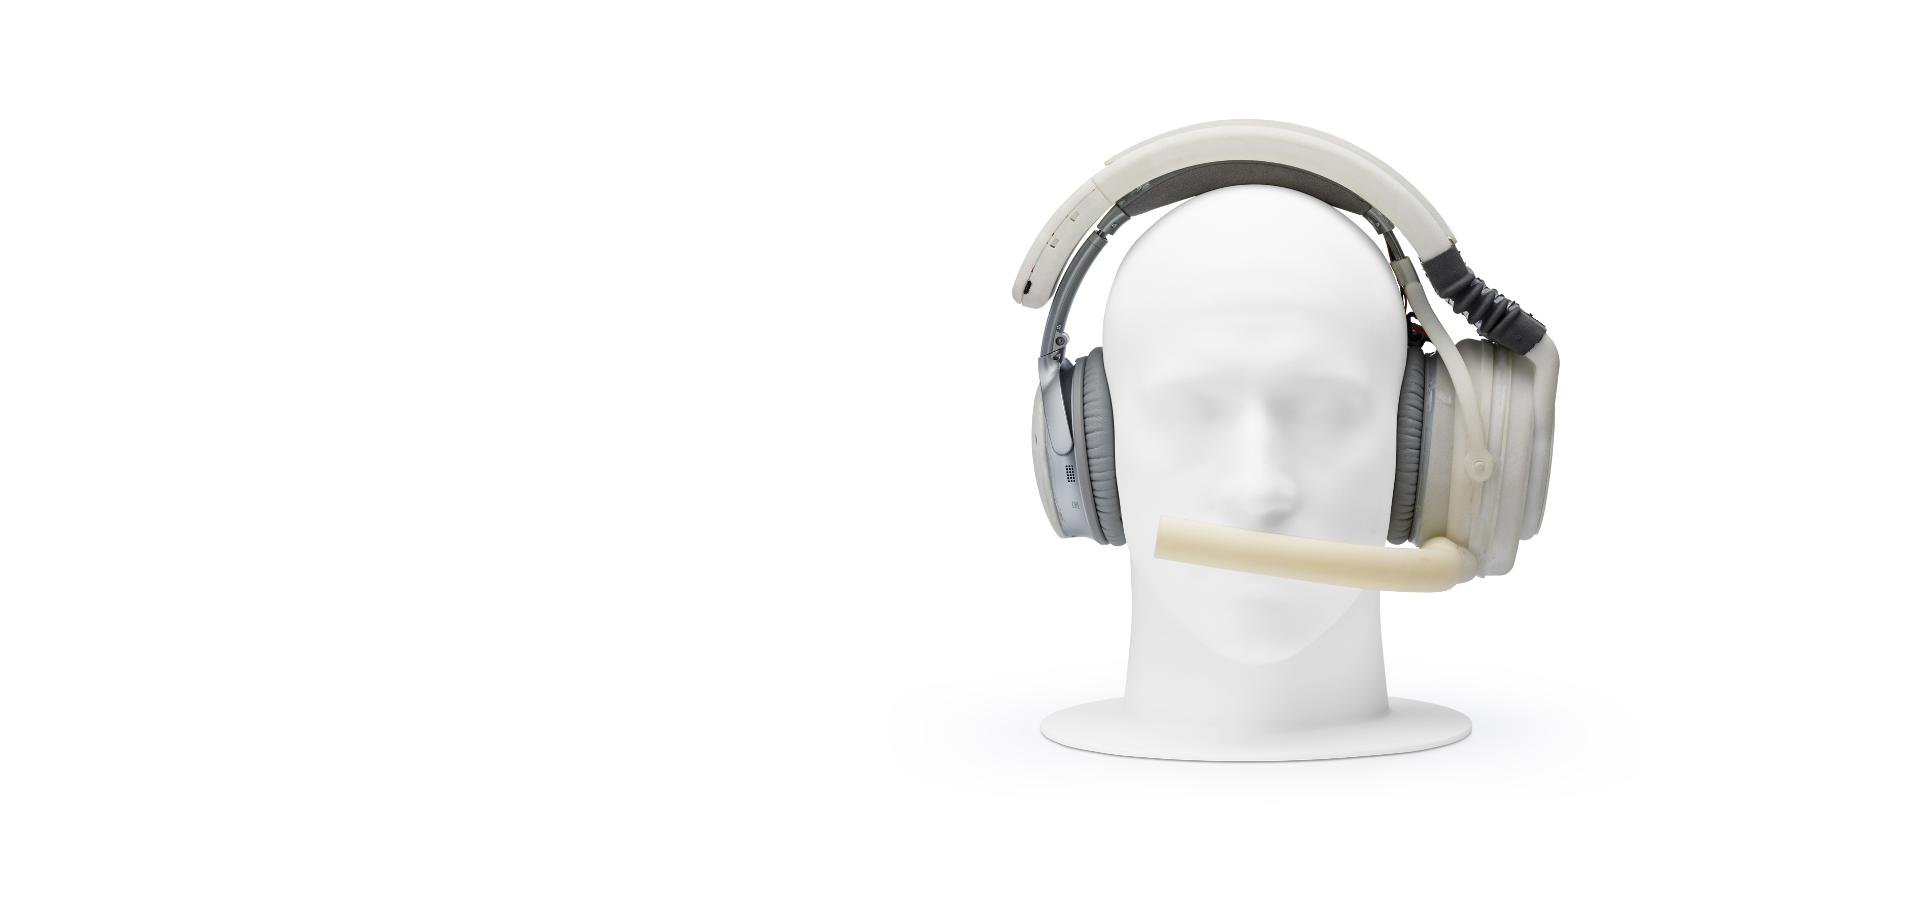 Hlava figuríny s prototypem sluchátek s náustkem.